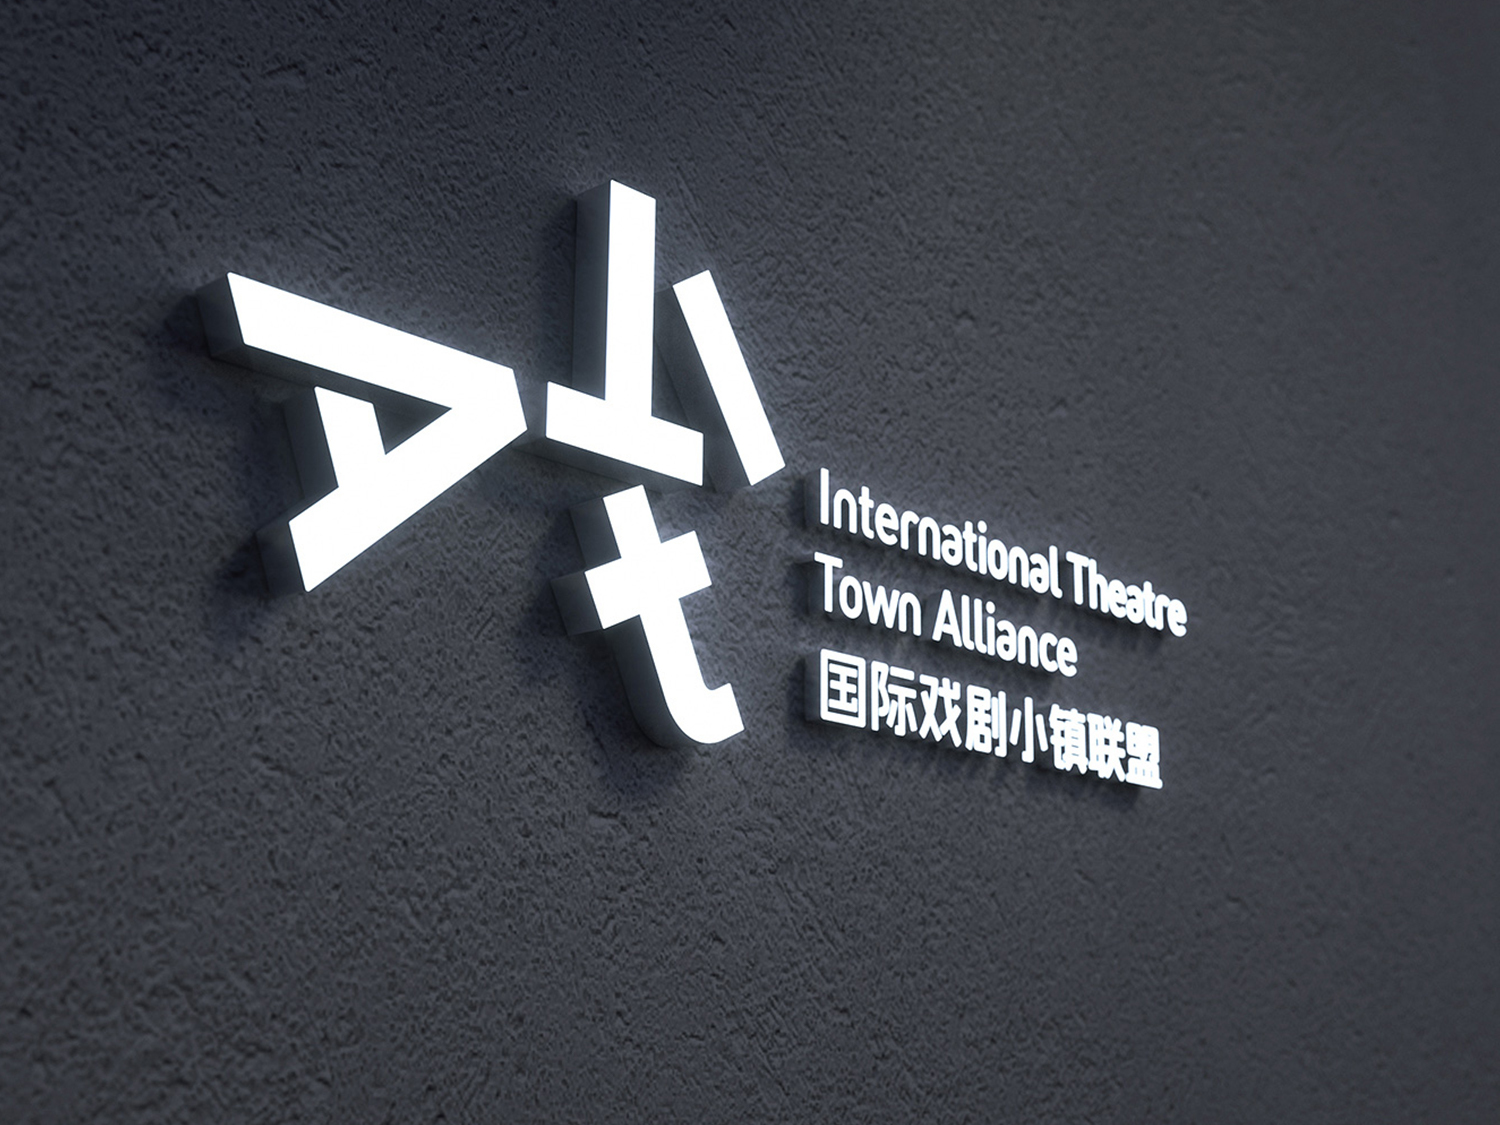 International Theatre Town Alliance